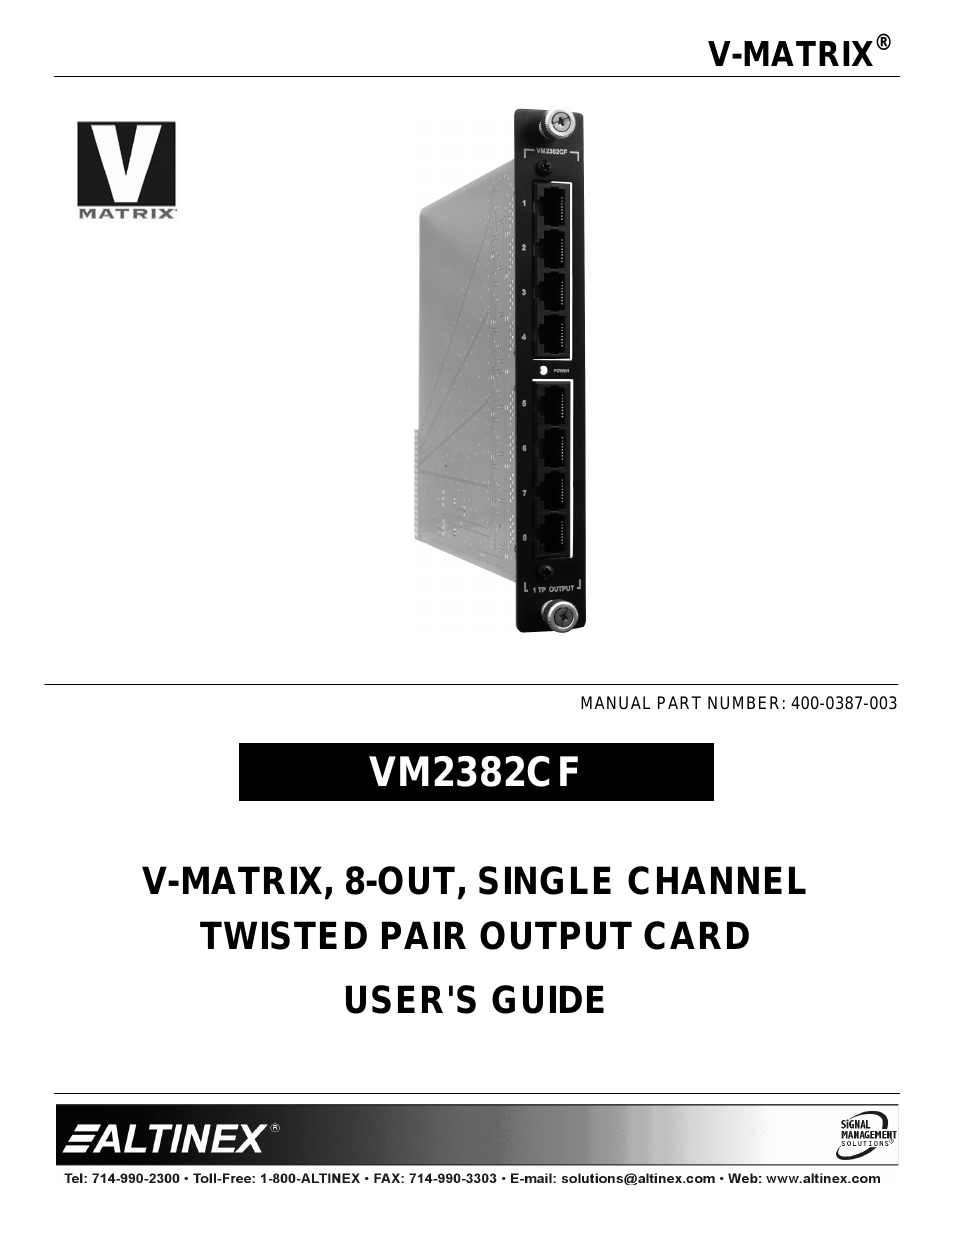 V-MATRIX VM2382CF